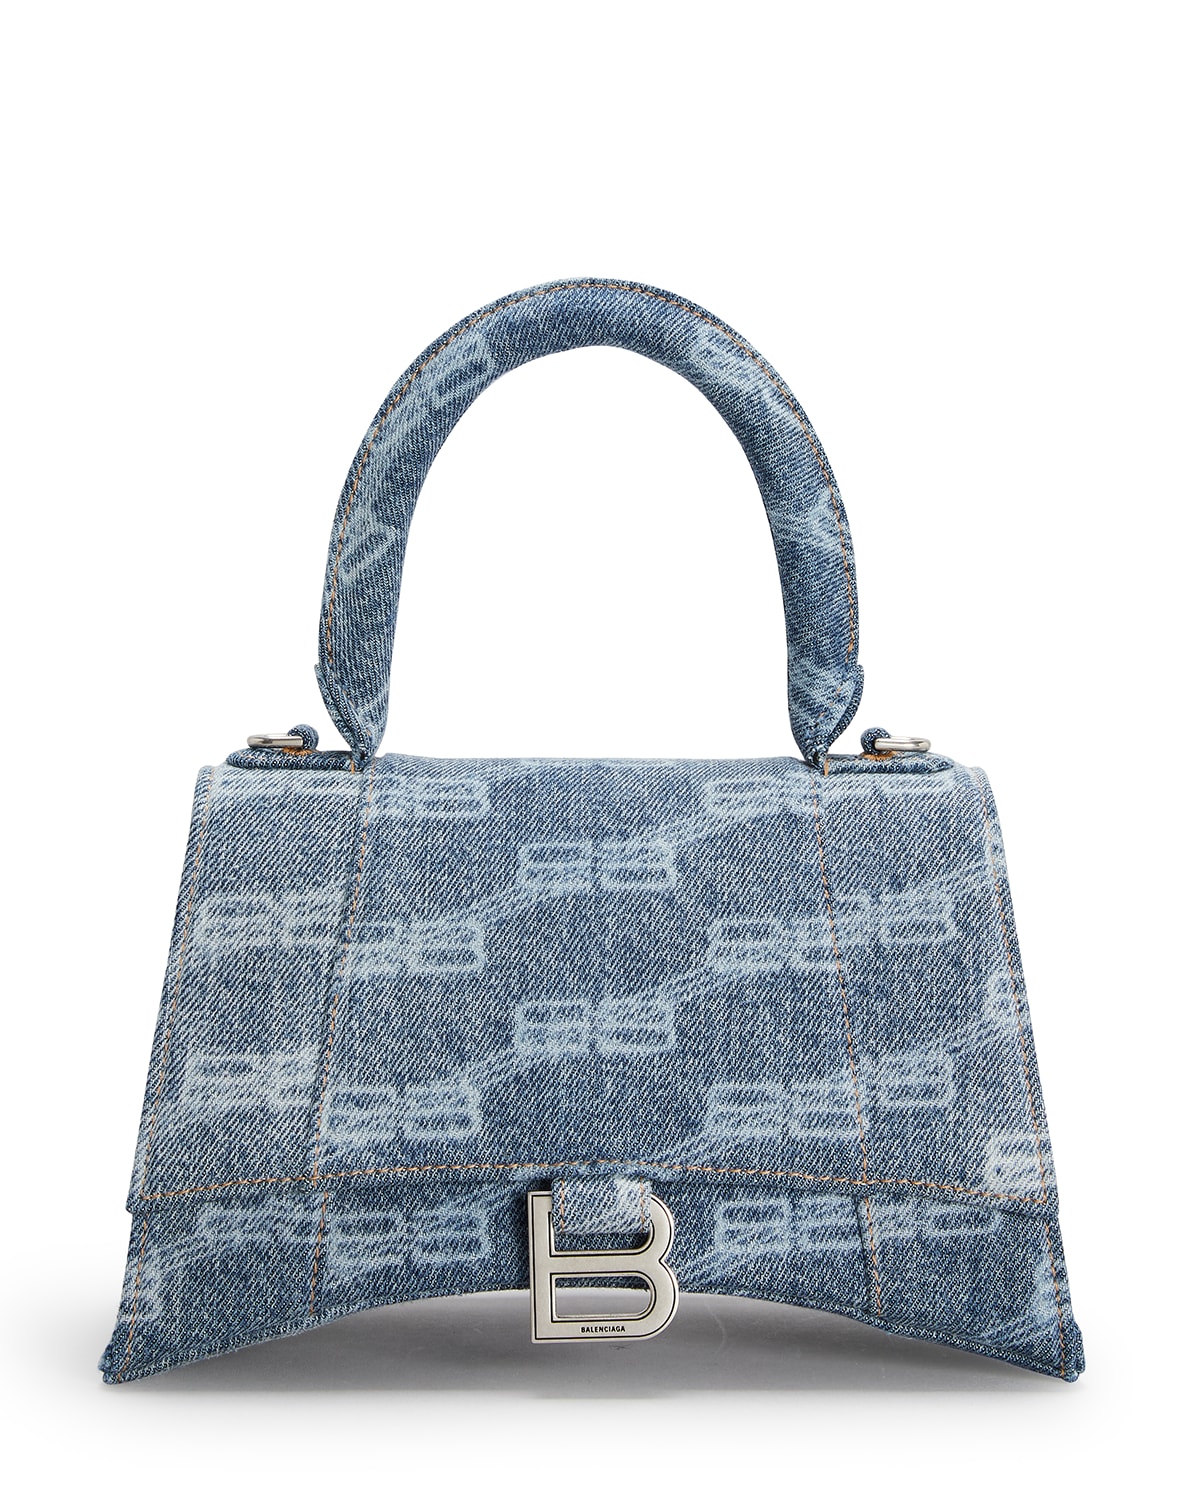 Balenciaga Top Handles Bag | Neiman Marcus